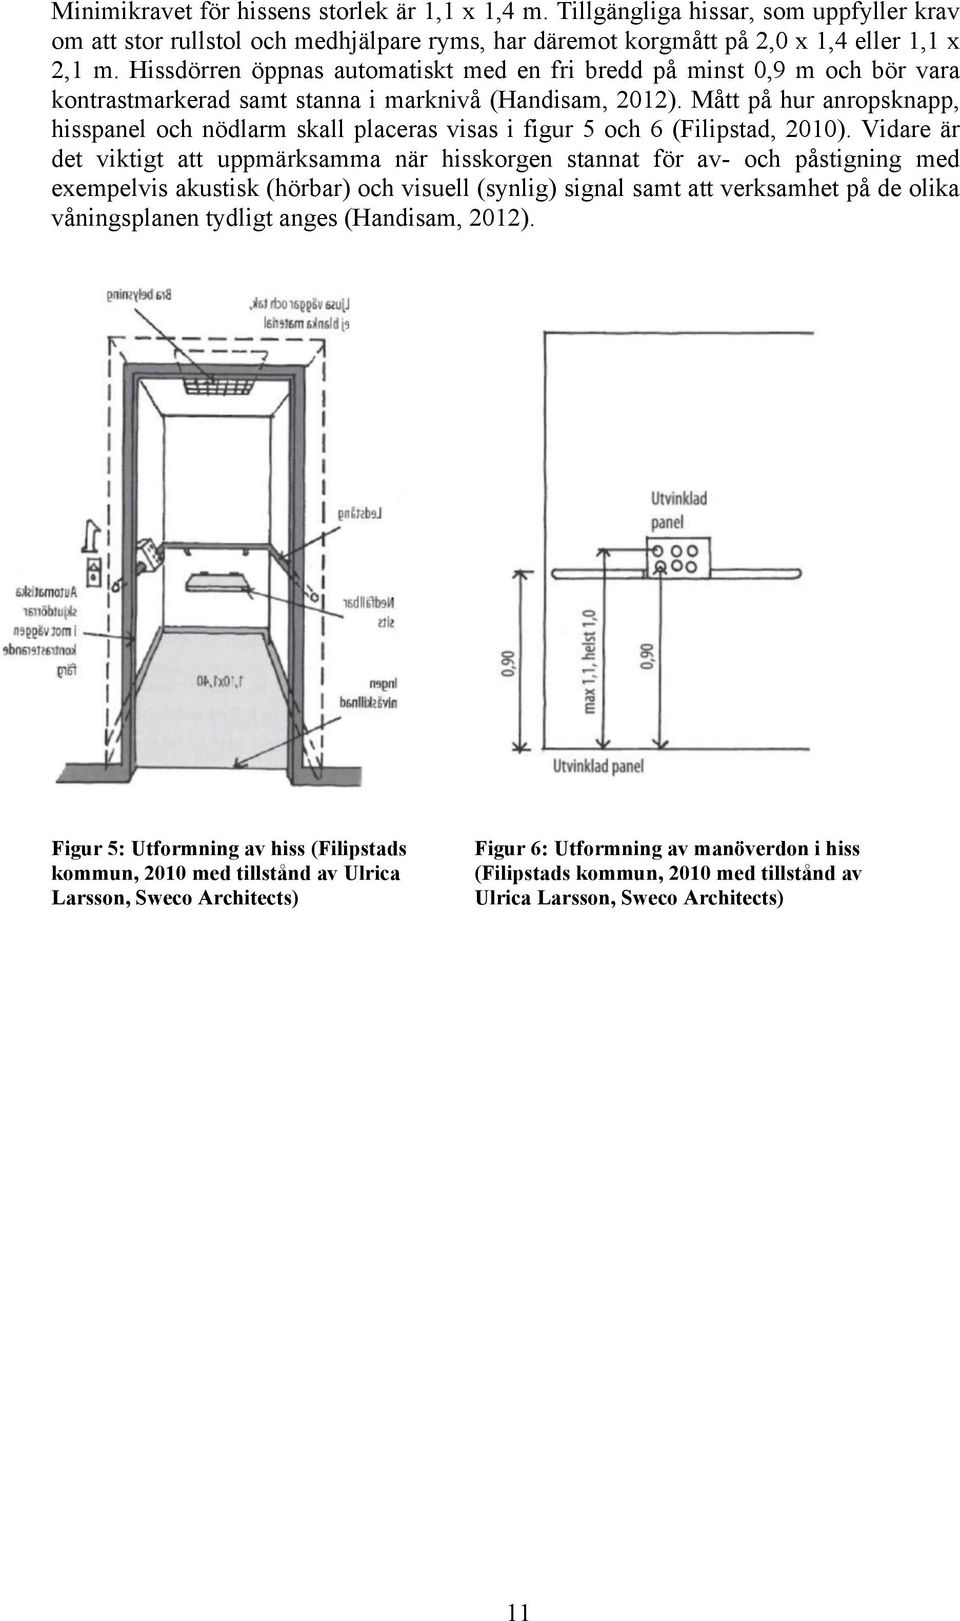 Mått på hur anropsknapp, hisspanel och nödlarm skall placeras visas i figur 5 och 6 (Filipstad, 2010).